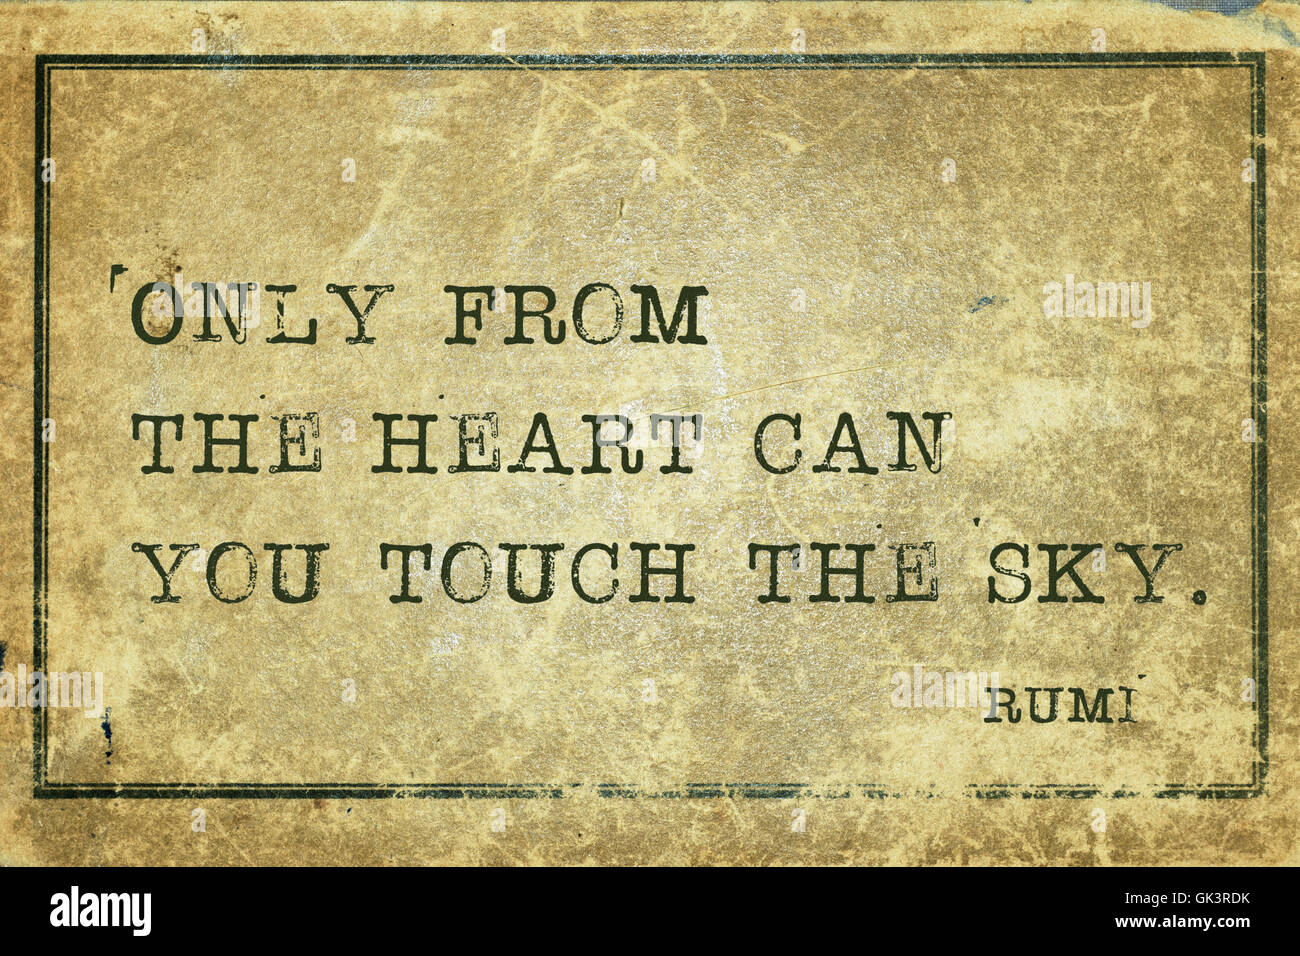 Nur aus dem Herzen kann man anfassen alte persische Dichter und Philosoph Rumi Zitat auf Grunge Vintage Karton gedruckt - Stockfoto